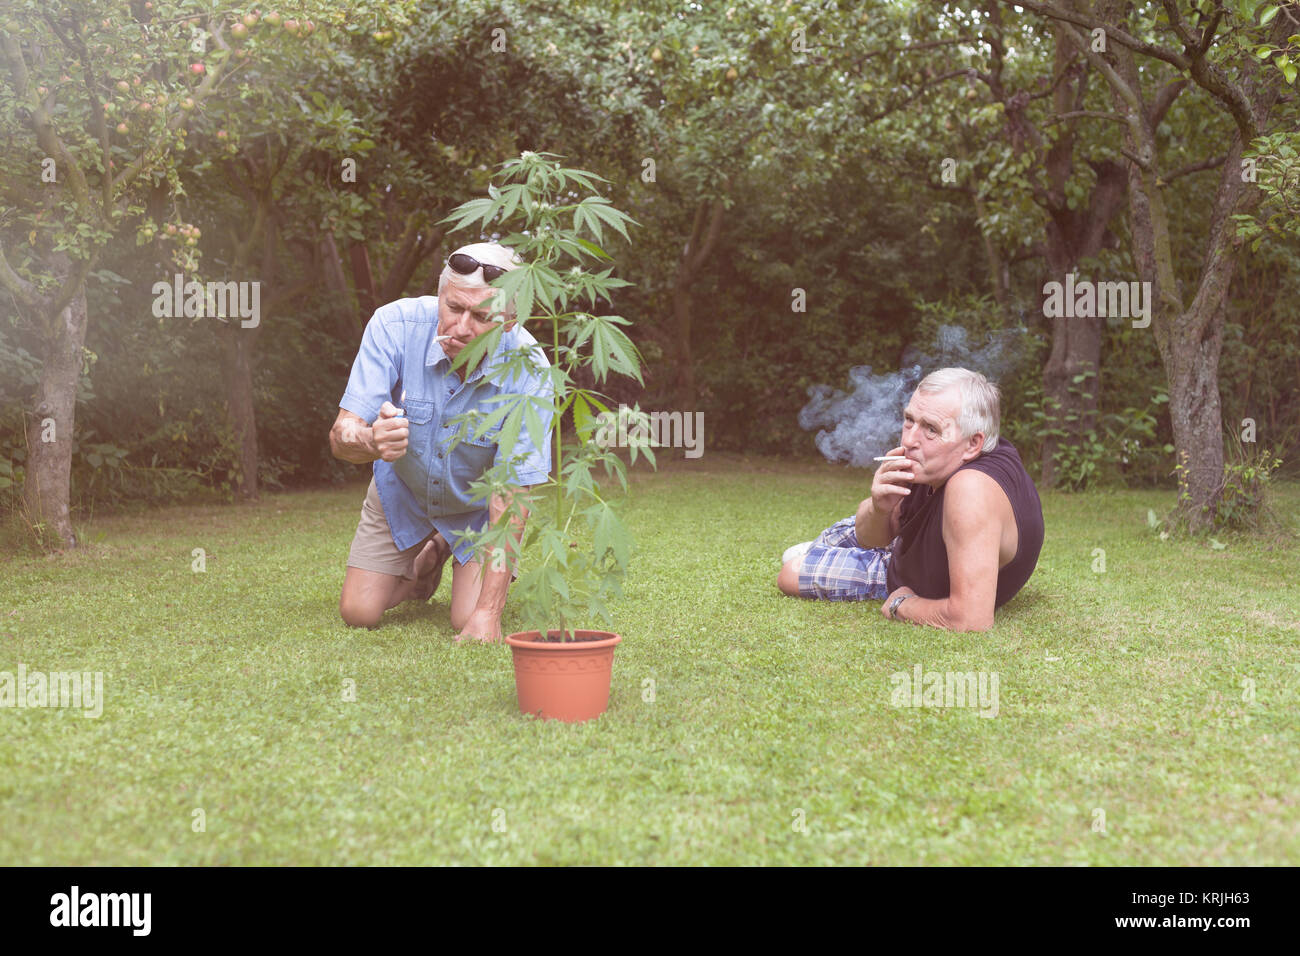 Seniors smoking marijuana and relaxing in the garden Stock Photo